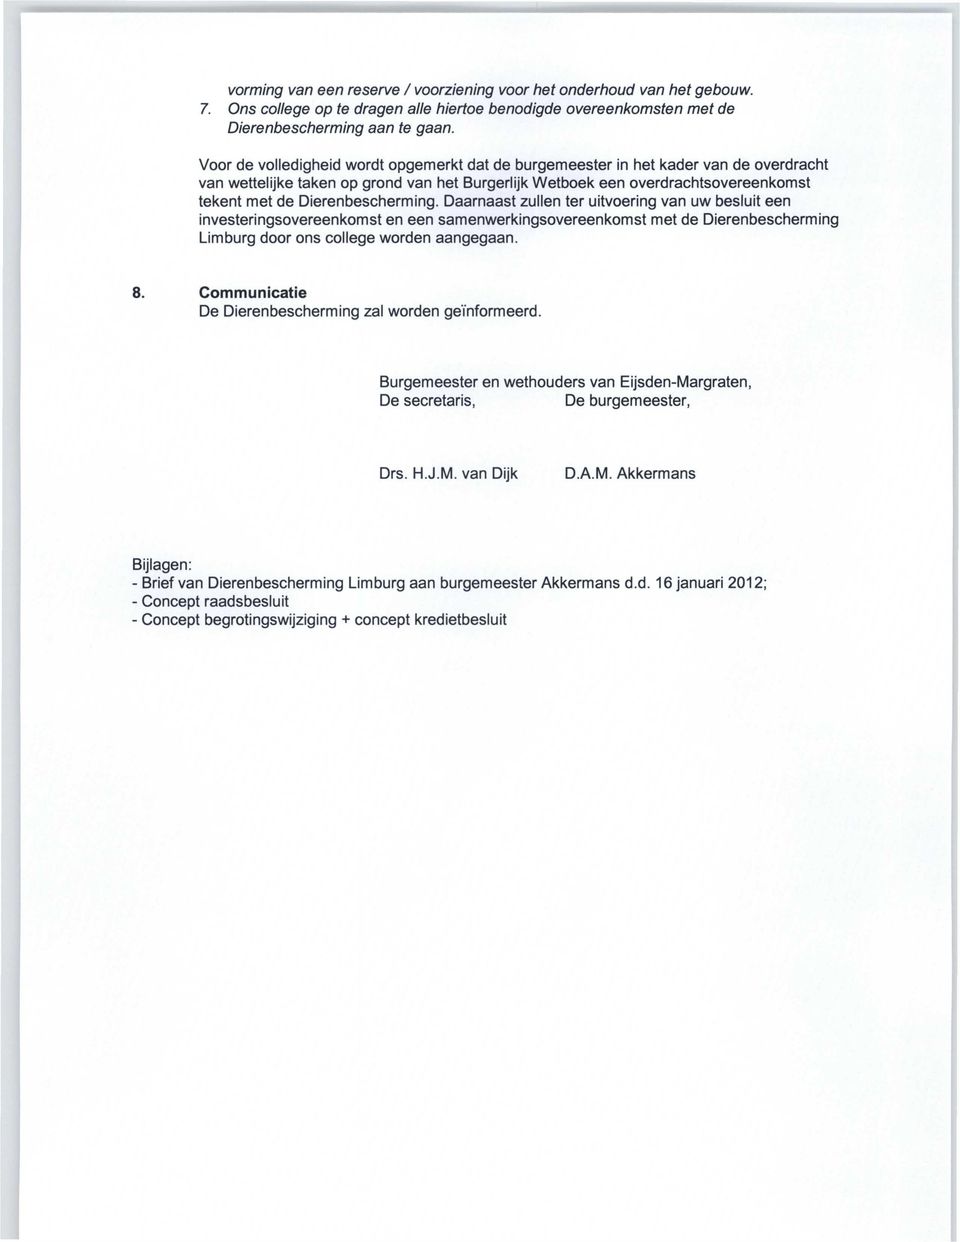 Dierenbescherming. Daarnaast zullen ter uitvoering van uw besluit een investeringsovereenkomst en een samenwerkingsovereenkomst met de Dierenbescherming Limburg door ons college worden aangegaan. 8.